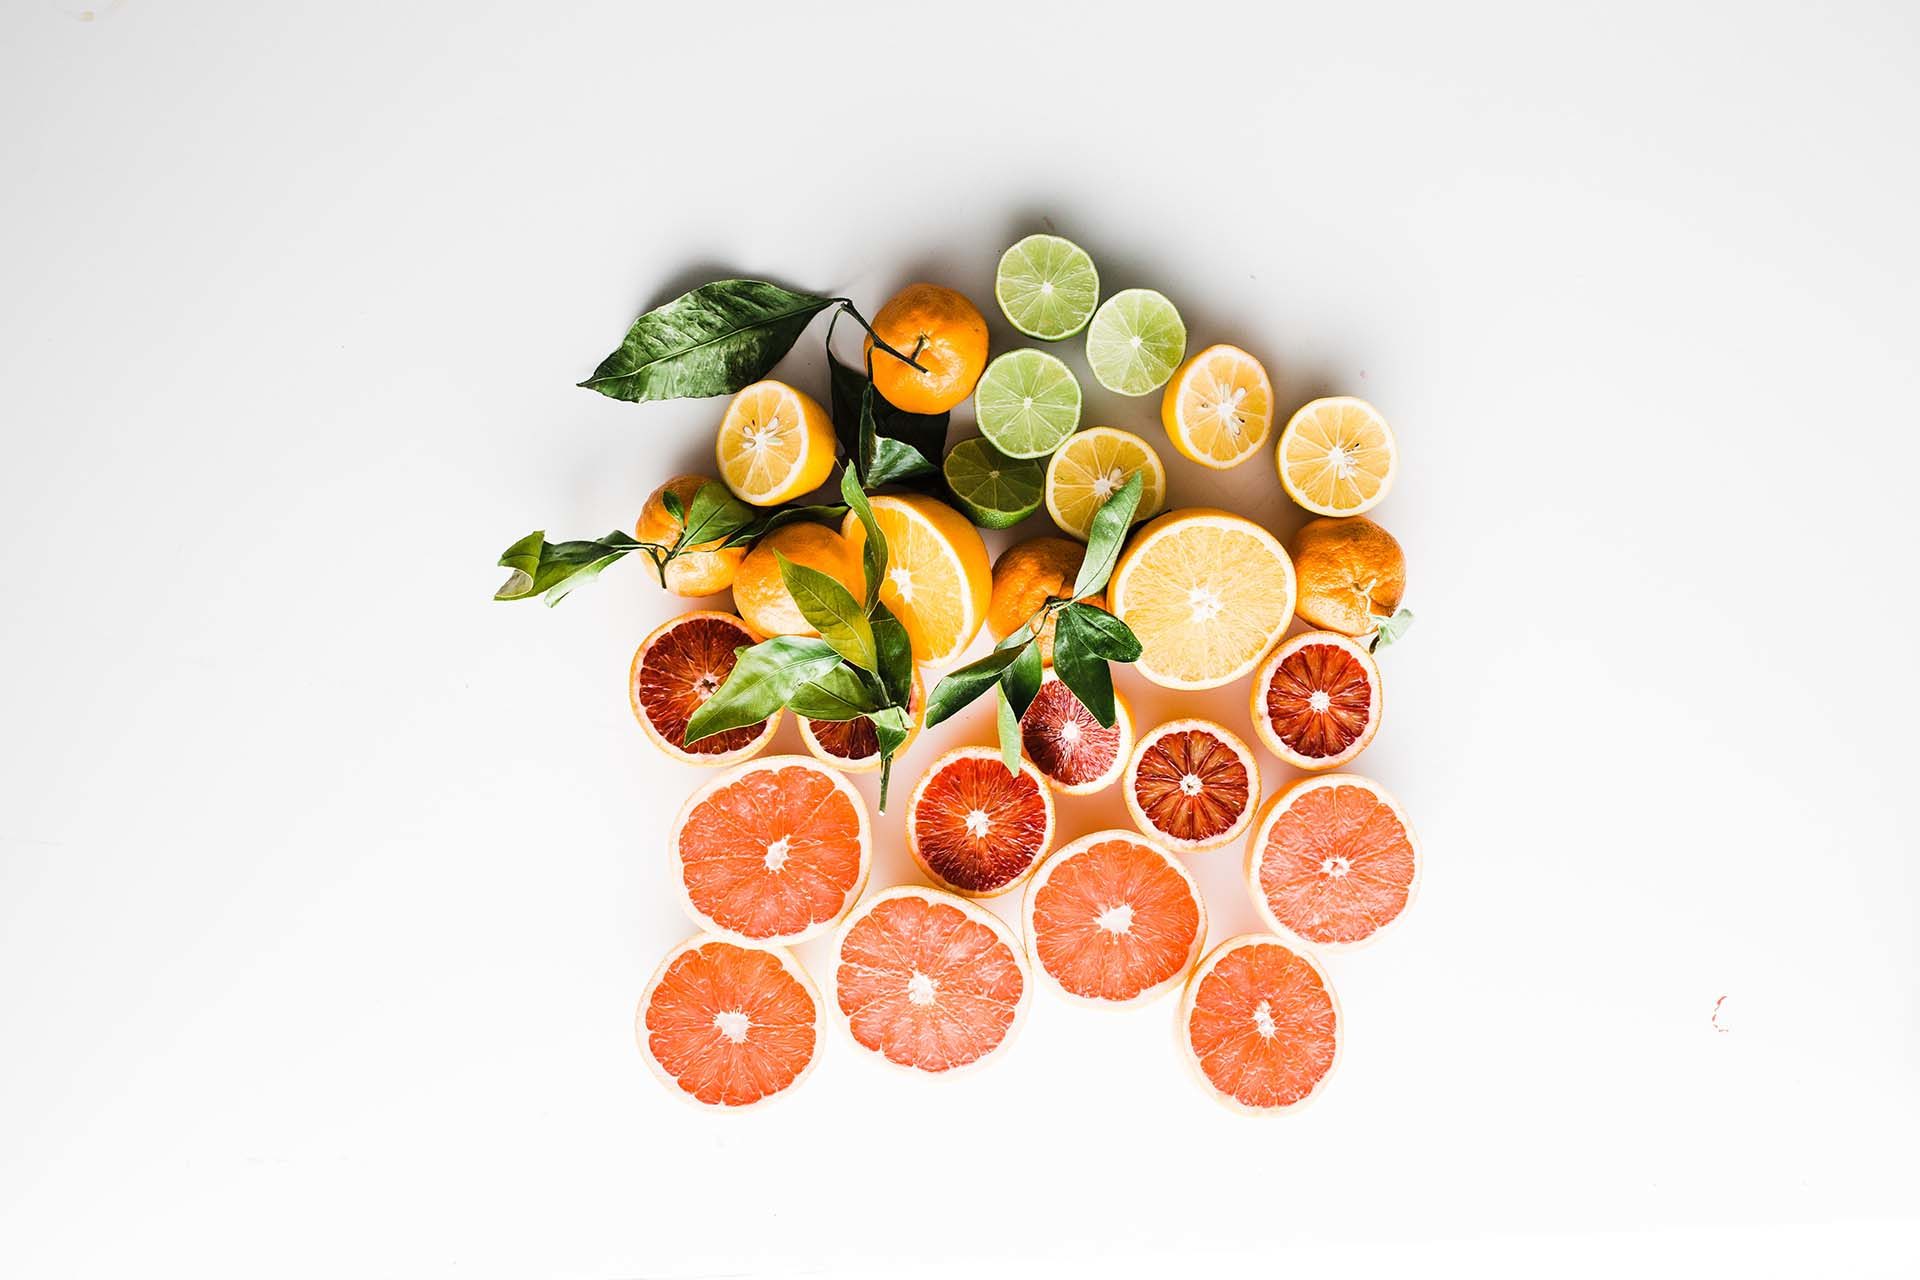 citrus fruit: lemons, limes, oranges